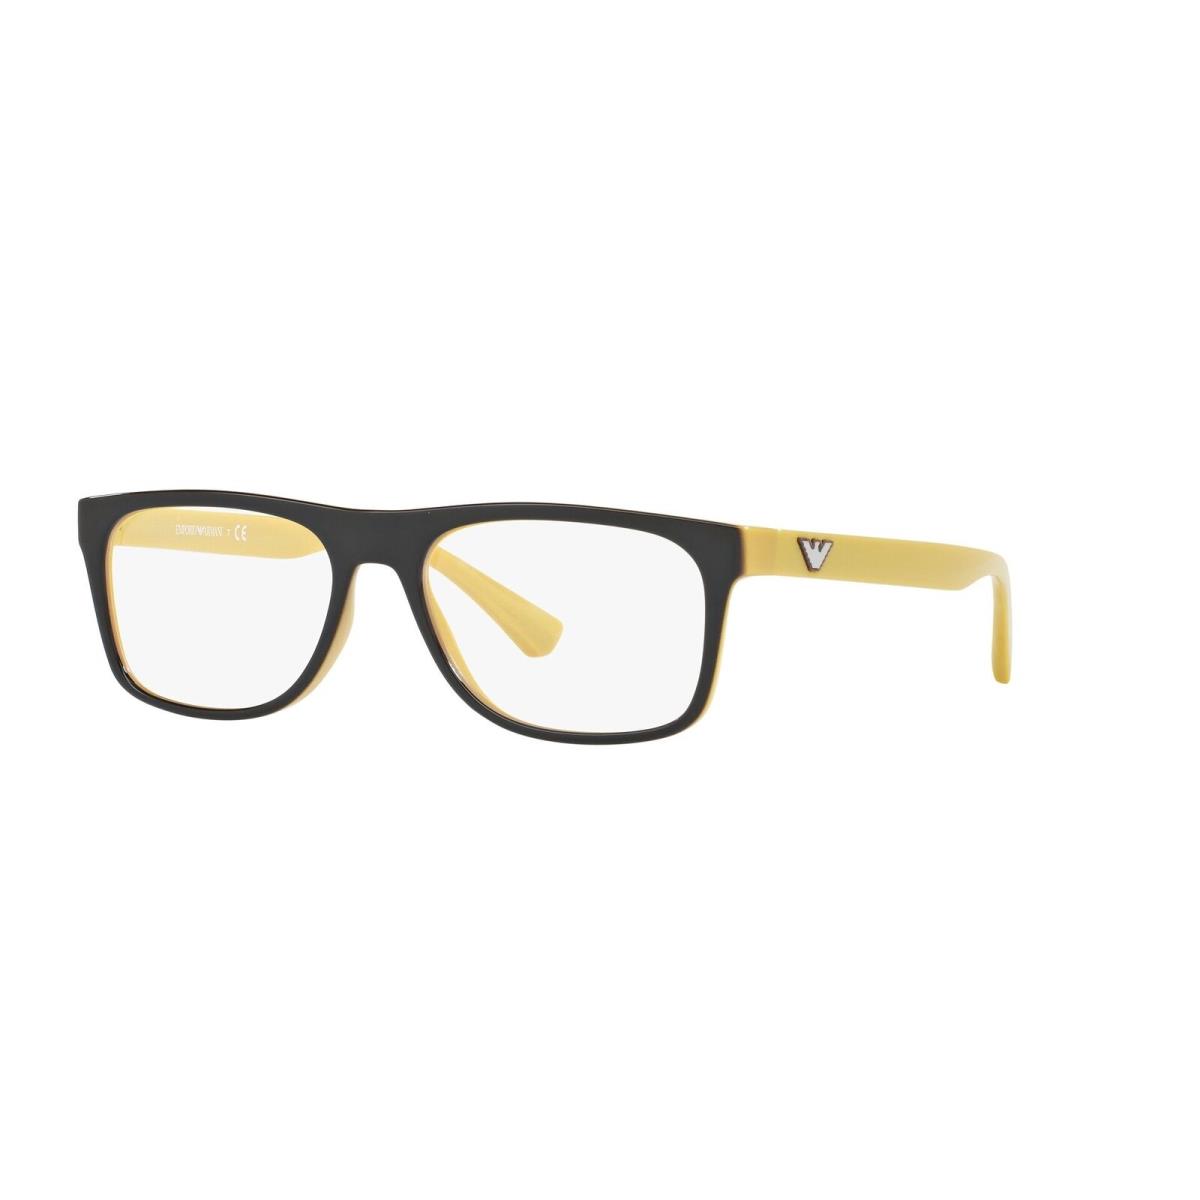 Emporio Armani EA3097 5555 Top Brown On Yellow Demo Lens 55 mm Men`s Eyeglasses